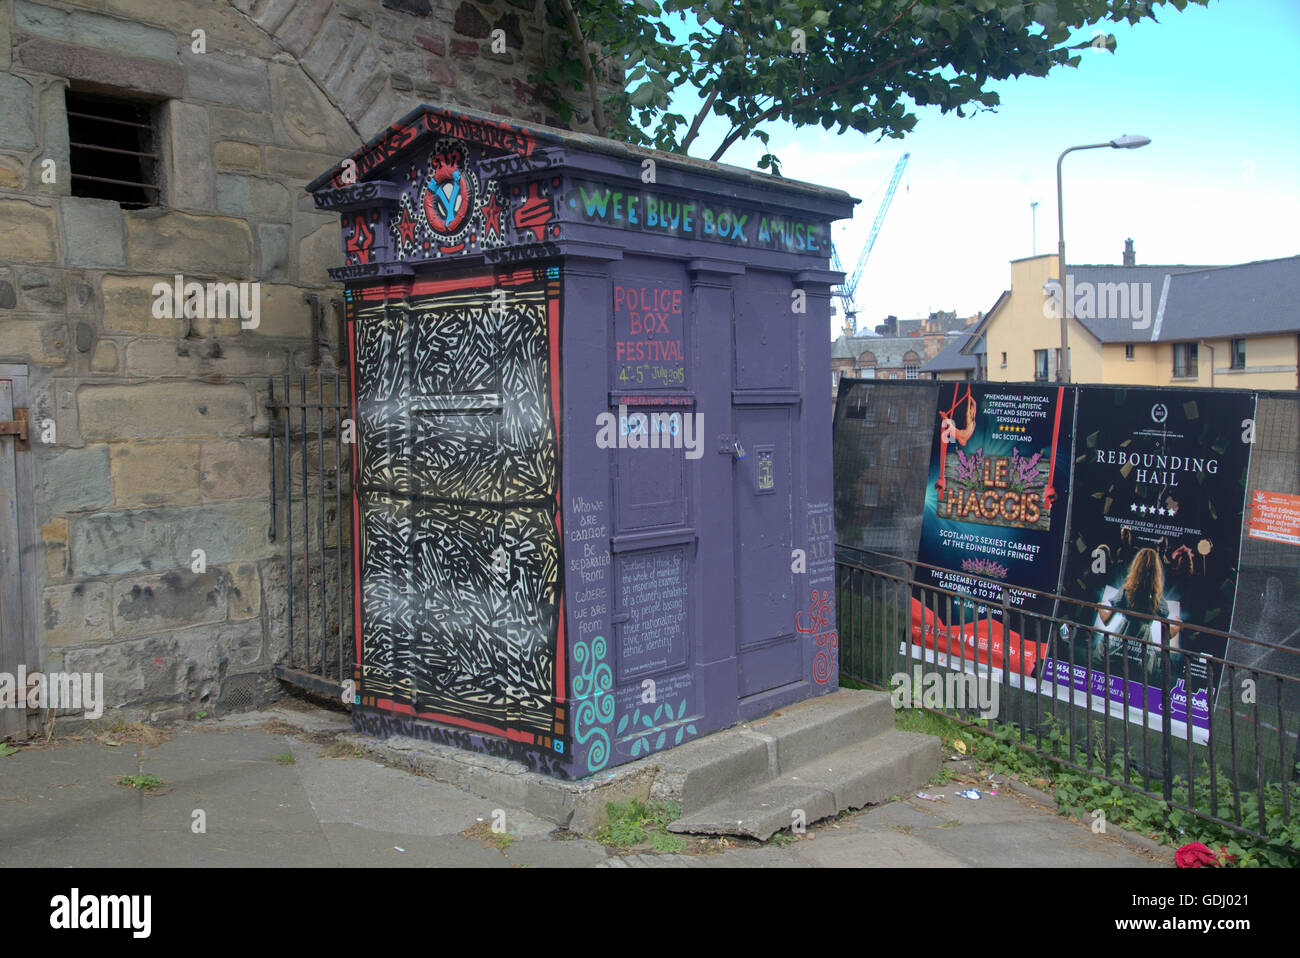 La police convertie fort info art avec annonces provenant de l'Edinburgh Festival Fringe festival de rue 2015 parrainé par Virgin, Édimbourg Banque D'Images